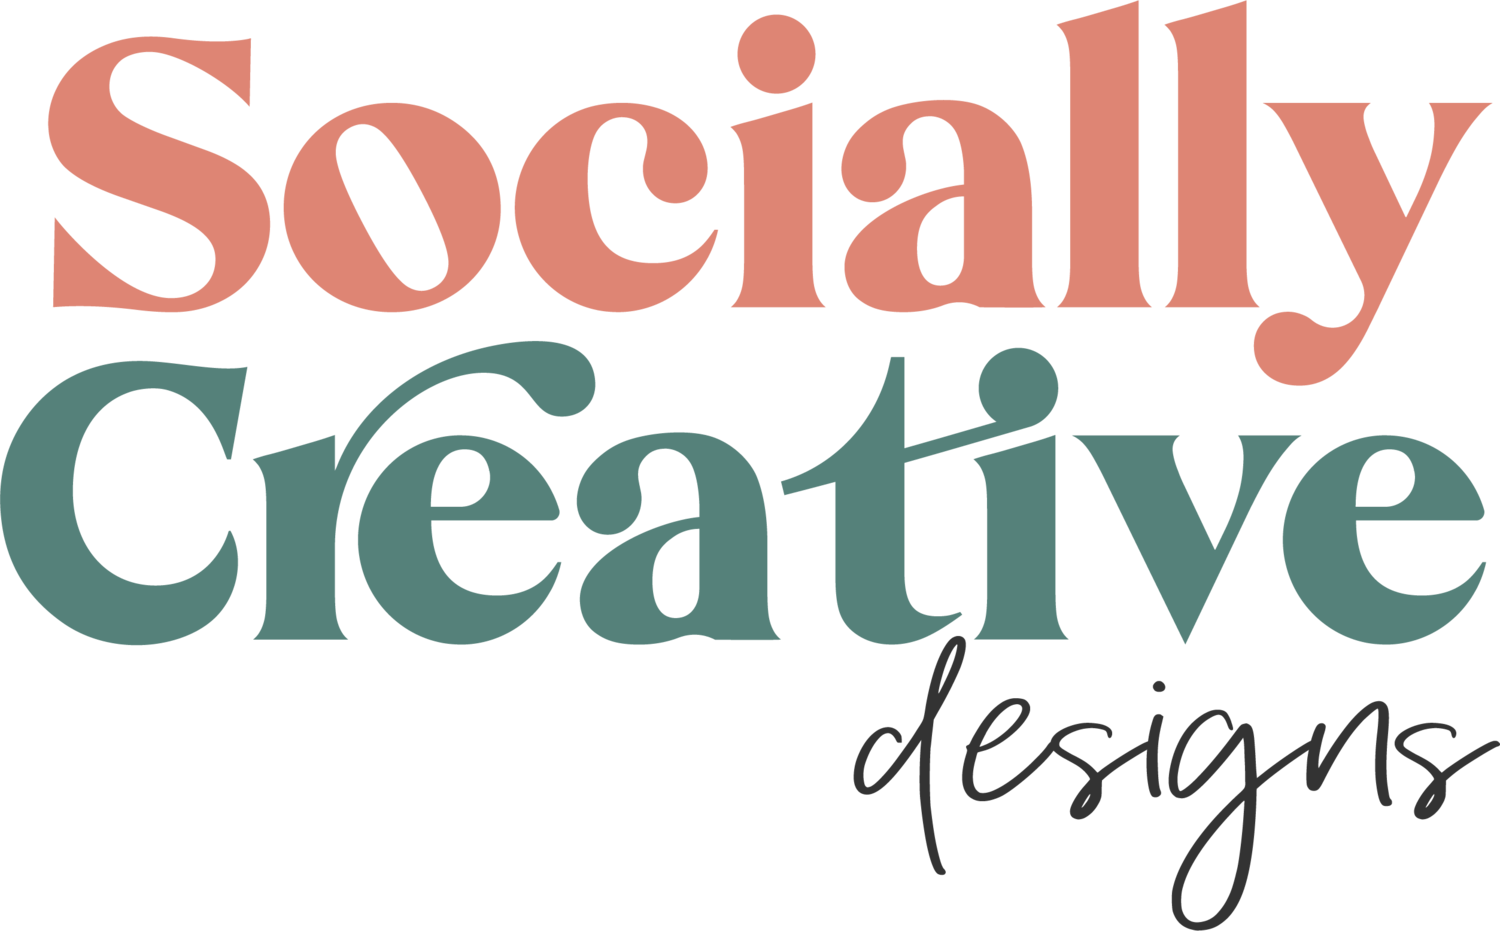 Socially Creative Designs